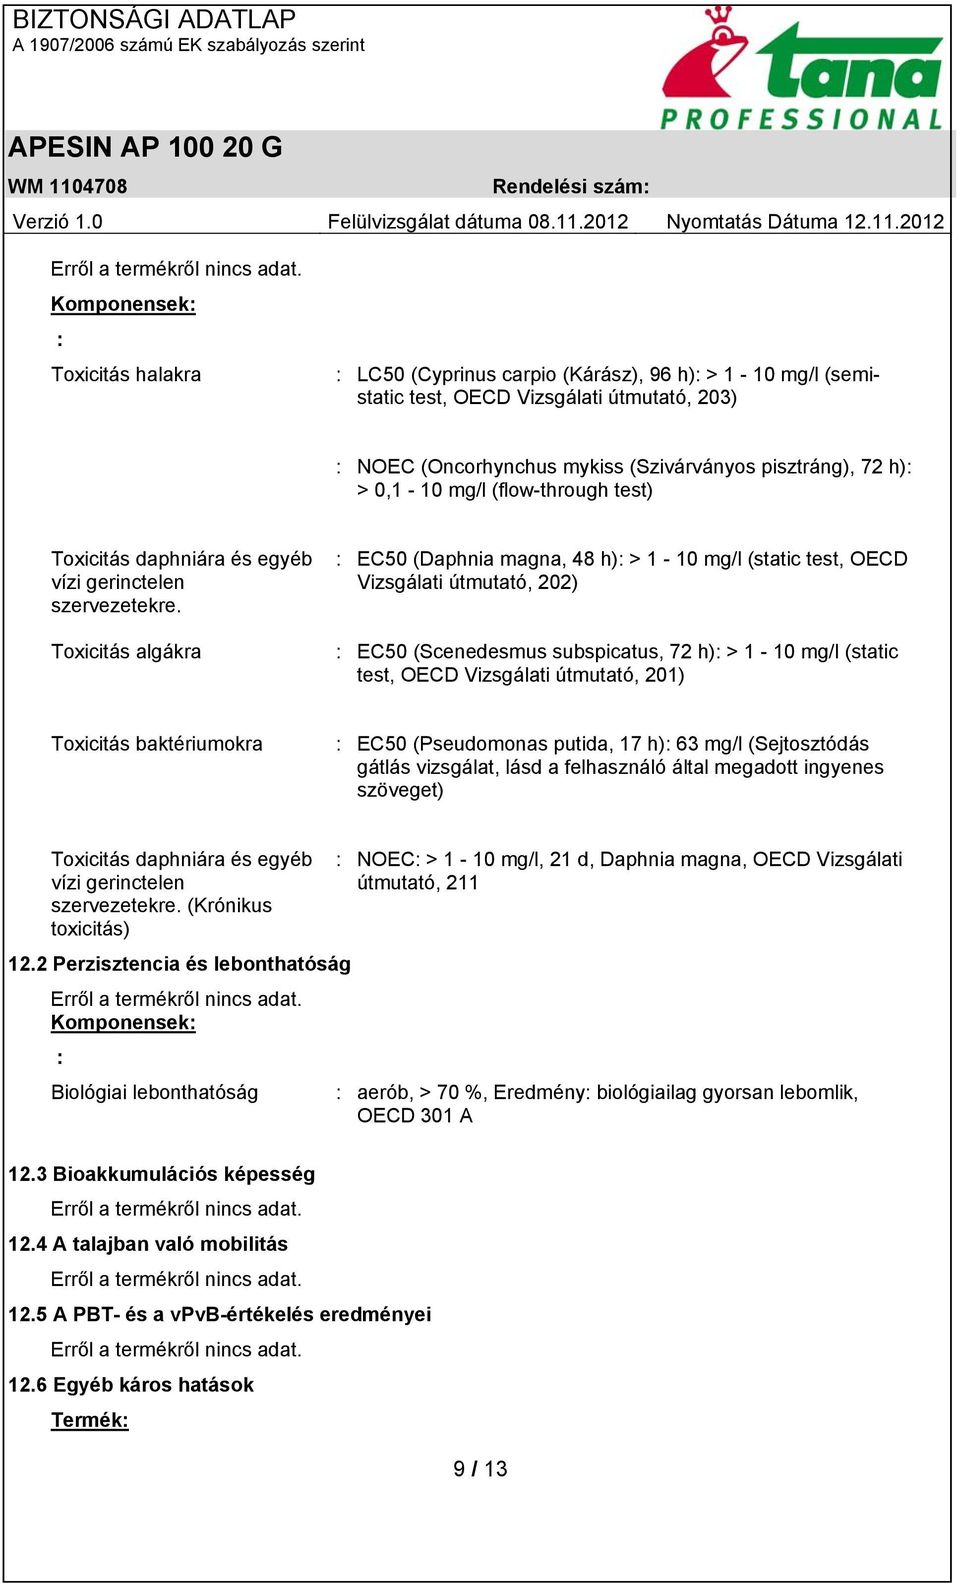 Toxicitás algákra : EC50 (Daphnia magna, 48 h): > 1-10 mg/l (static test, OECD Vizsgálati útmutató, 202) : EC50 (Scenedesmus subspicatus, 72 h): > 1-10 mg/l (static test, OECD Vizsgálati útmutató,